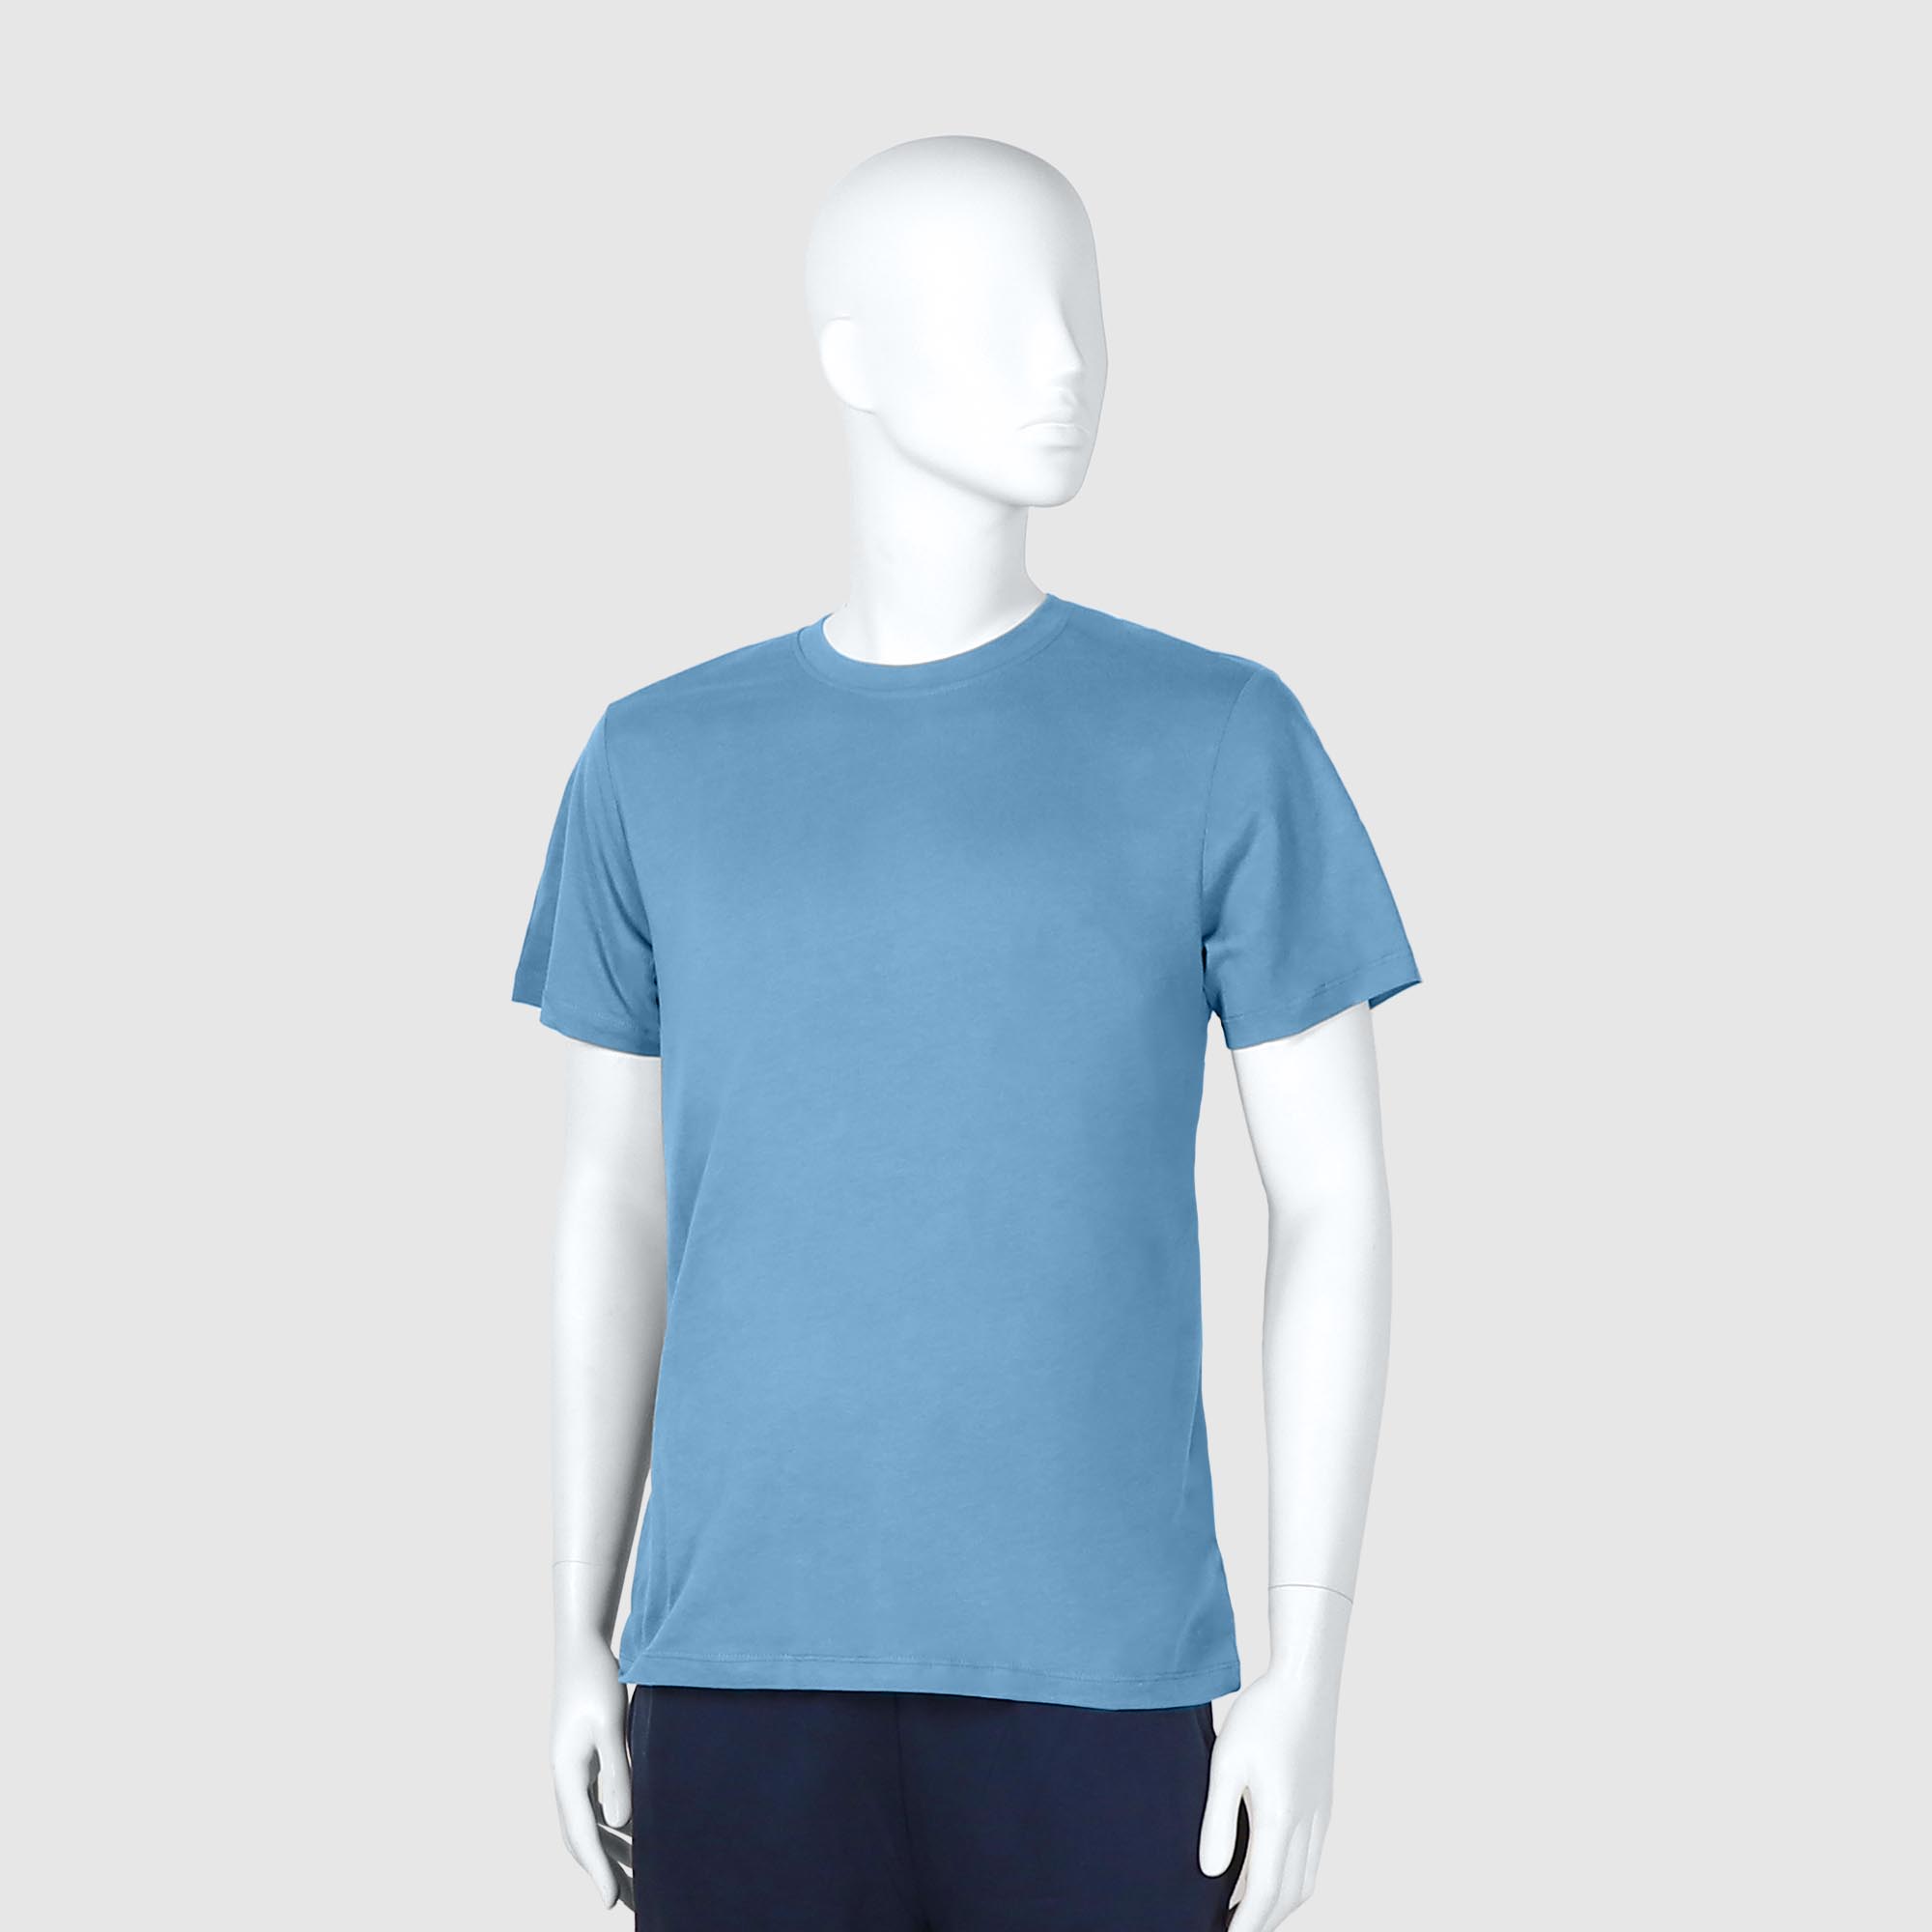 Мужская футболка Diva Teks голубая (DTD-03), цвет голубой, размер 46-48